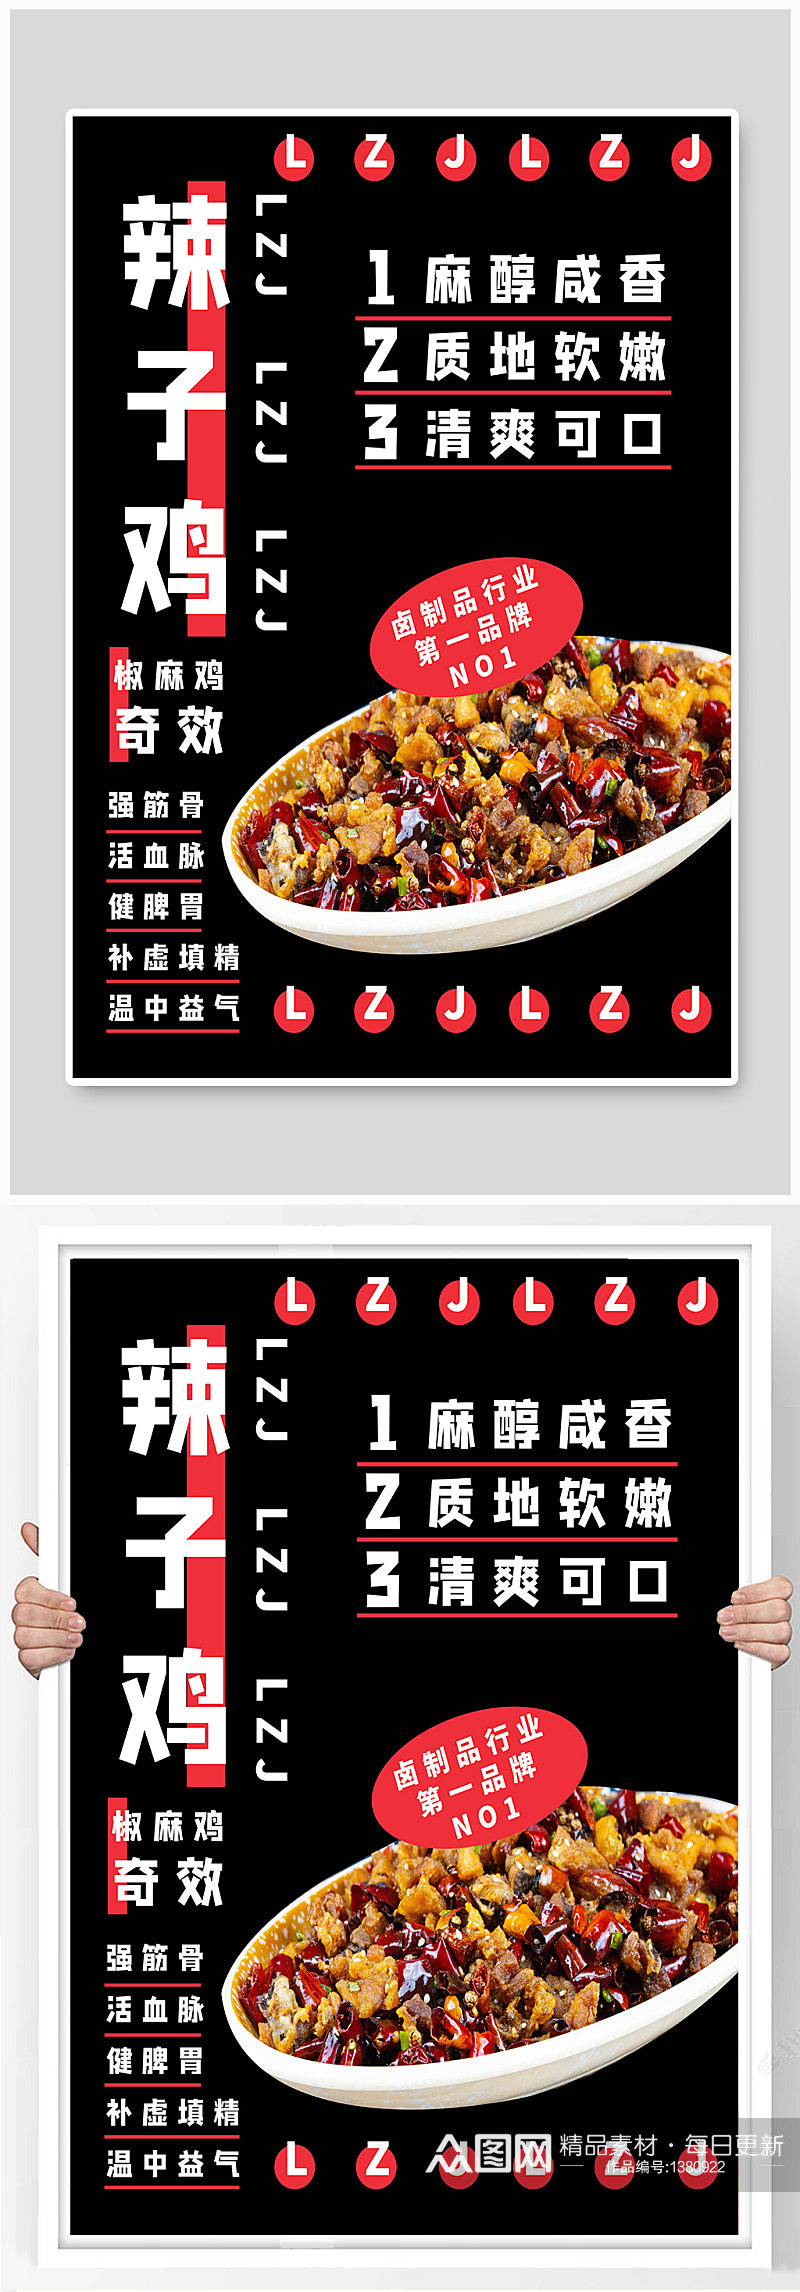 辣子鸡食品宣传海报素材